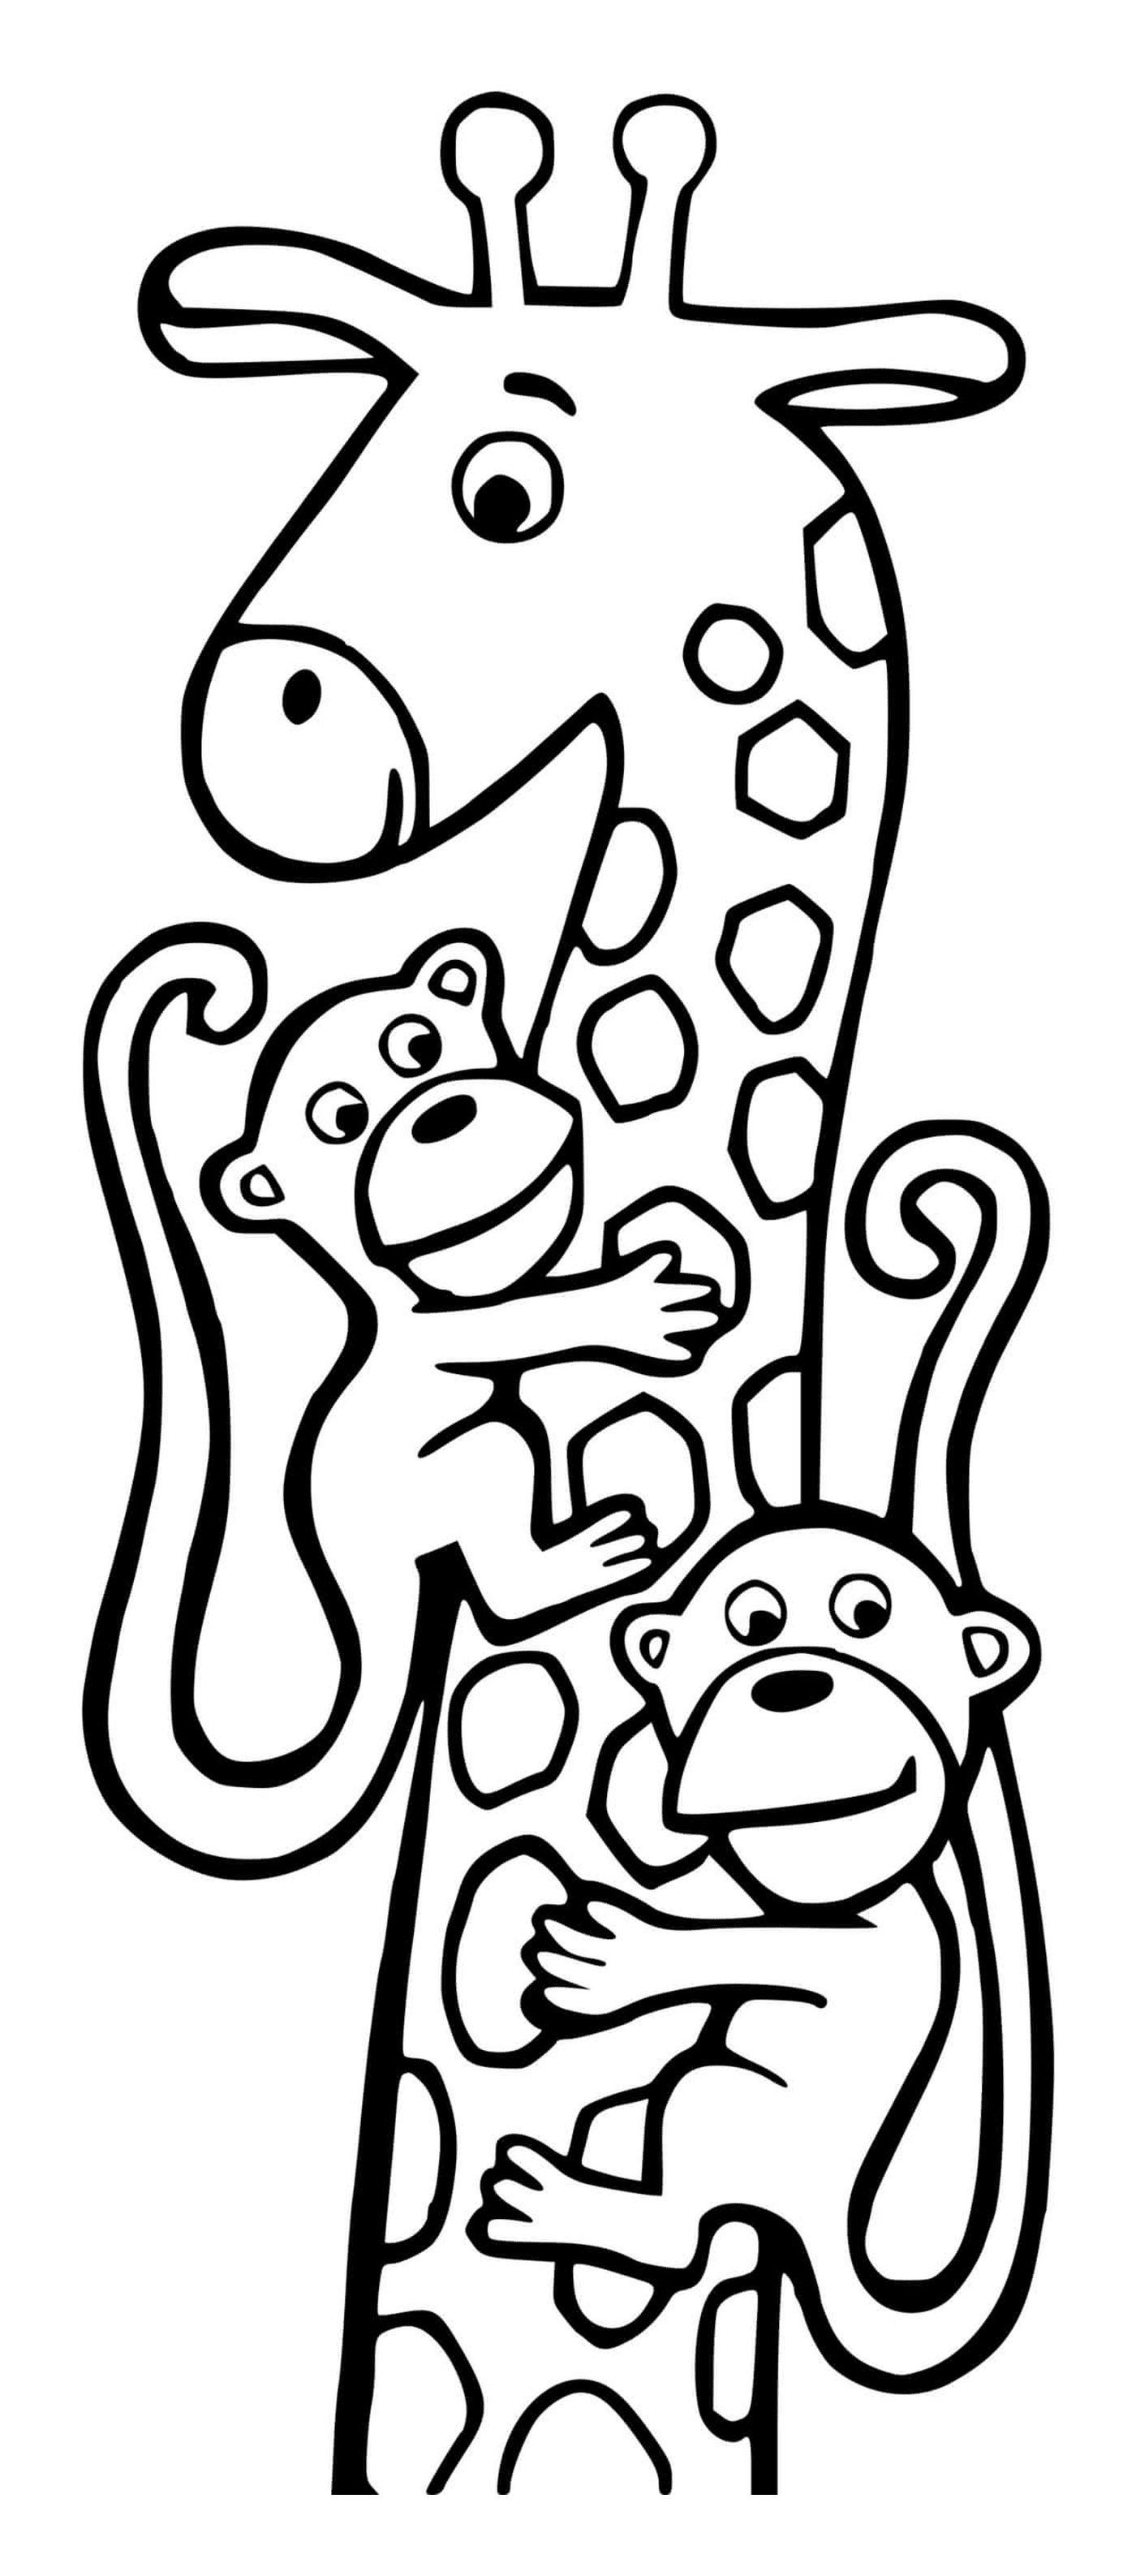  Girafe e due scimmie 